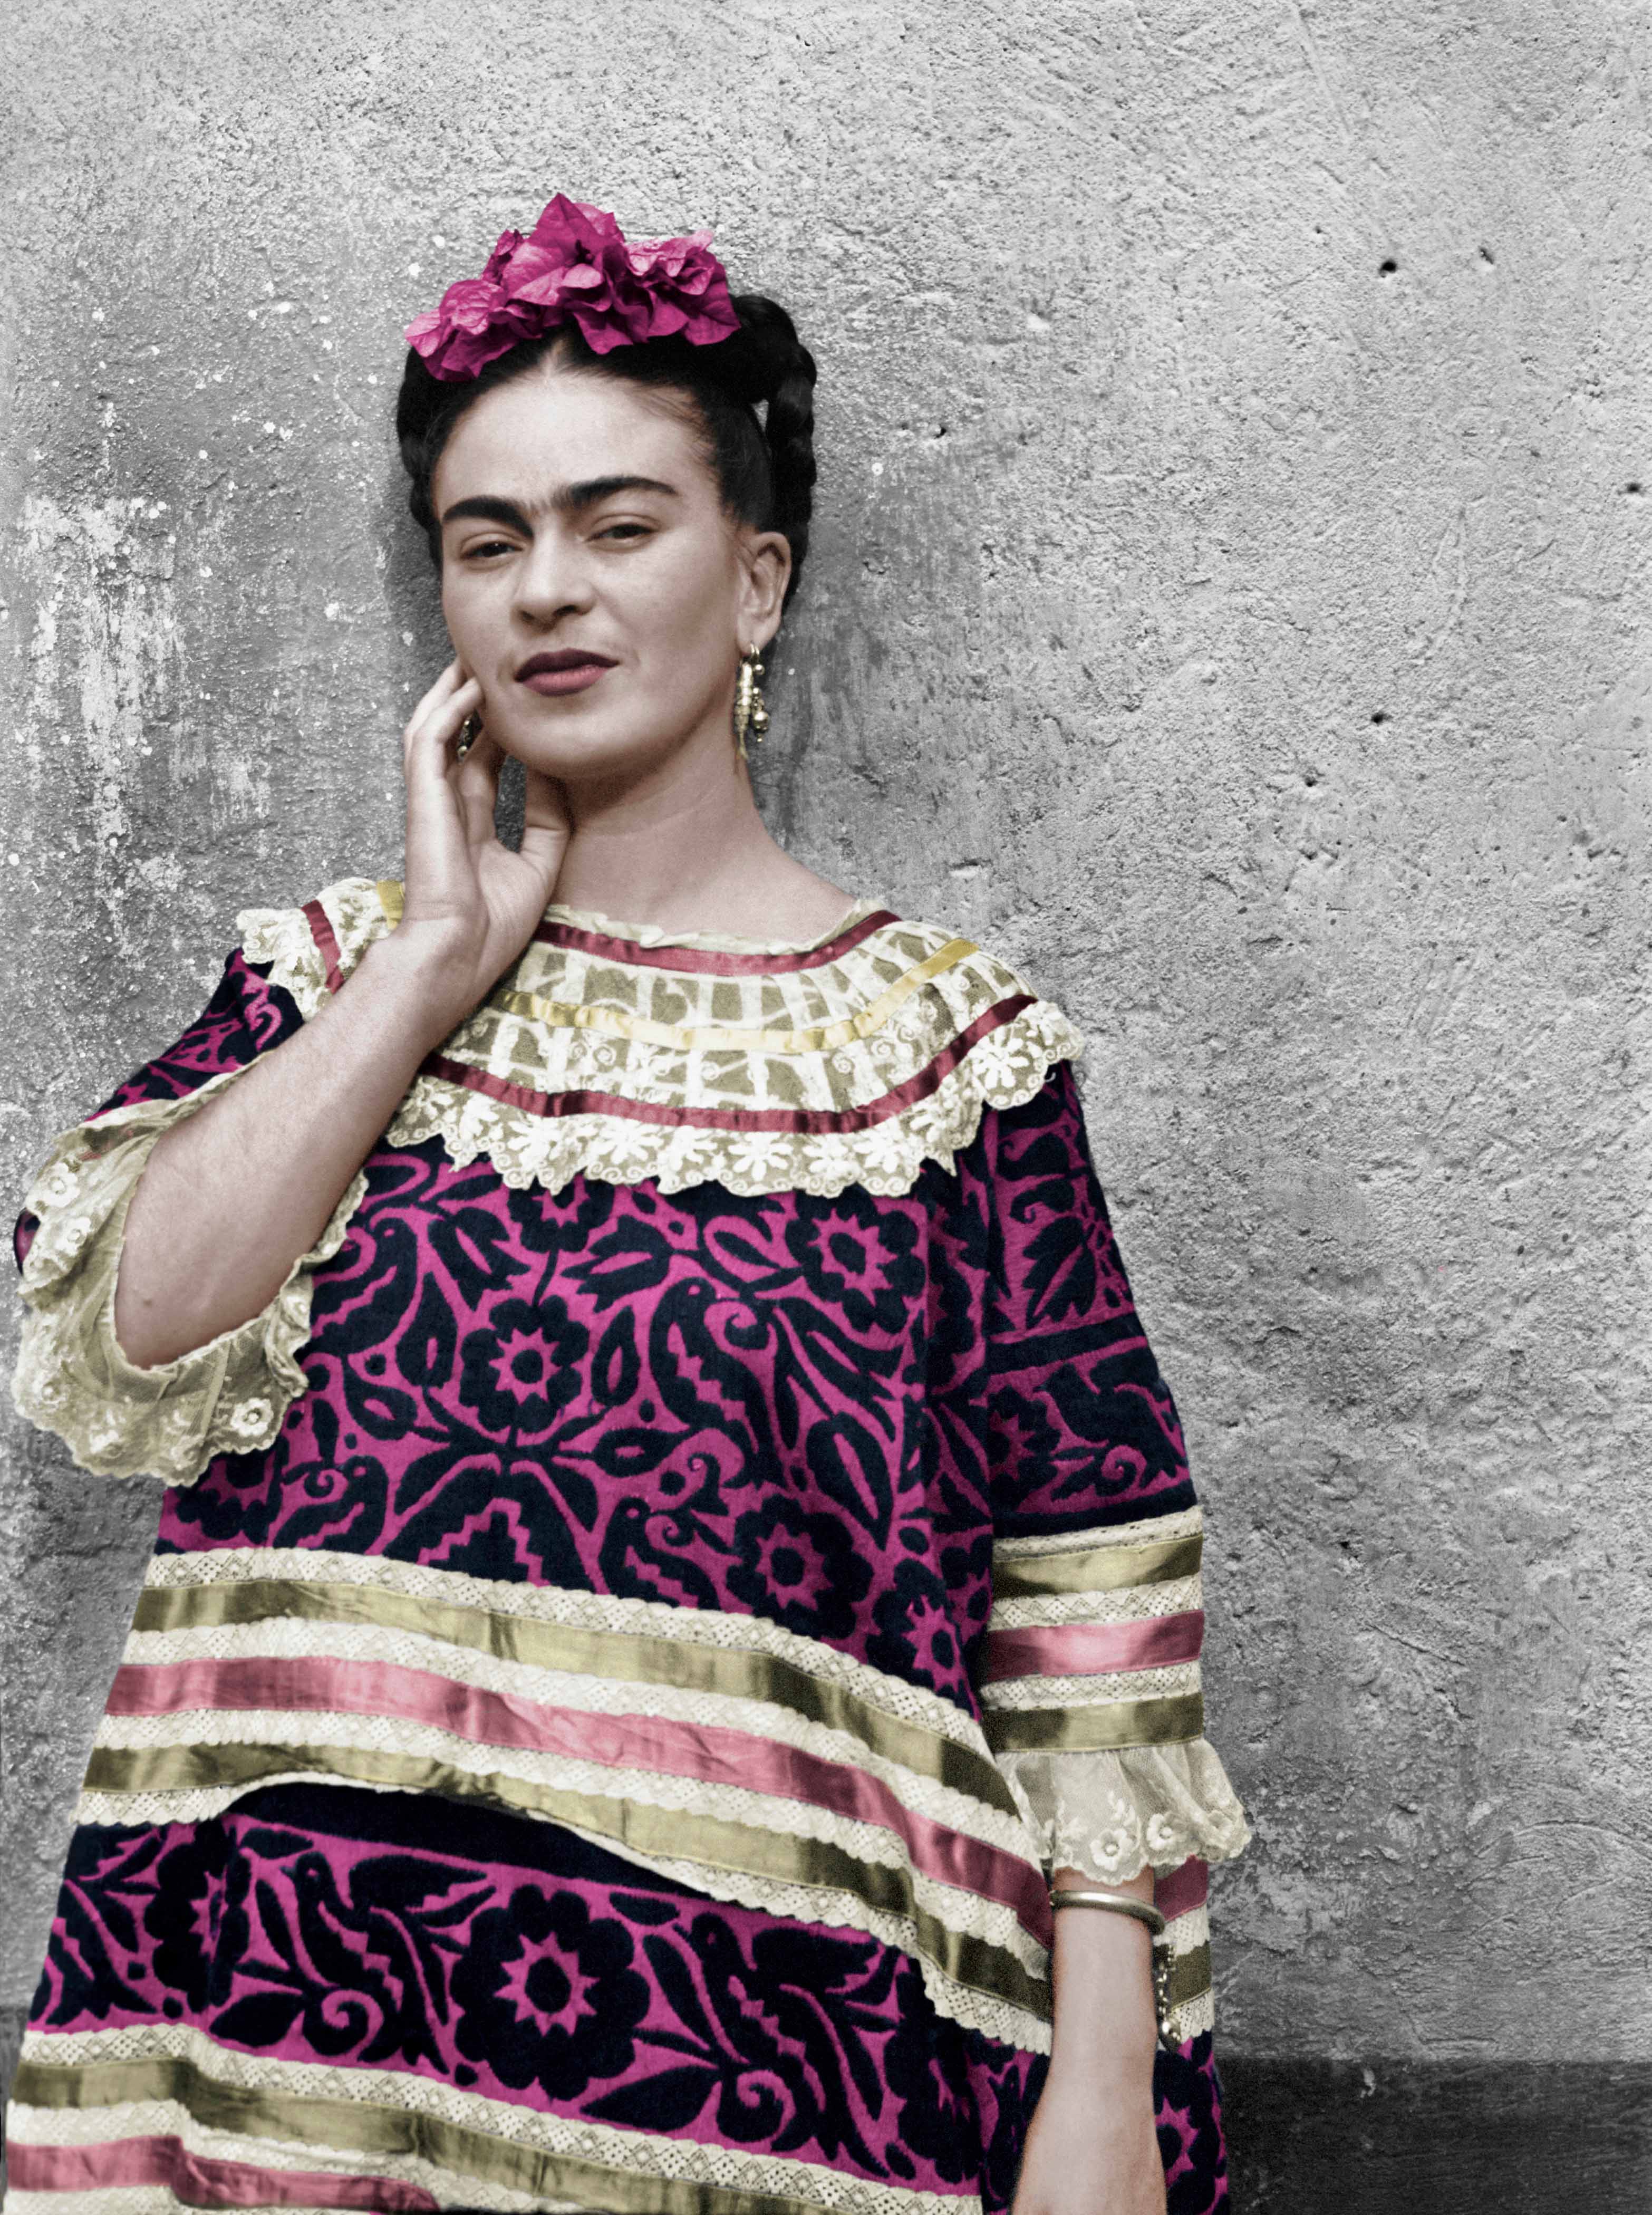 Negli autoritratti di Frida Kahlo tutto il suo travagliato caos